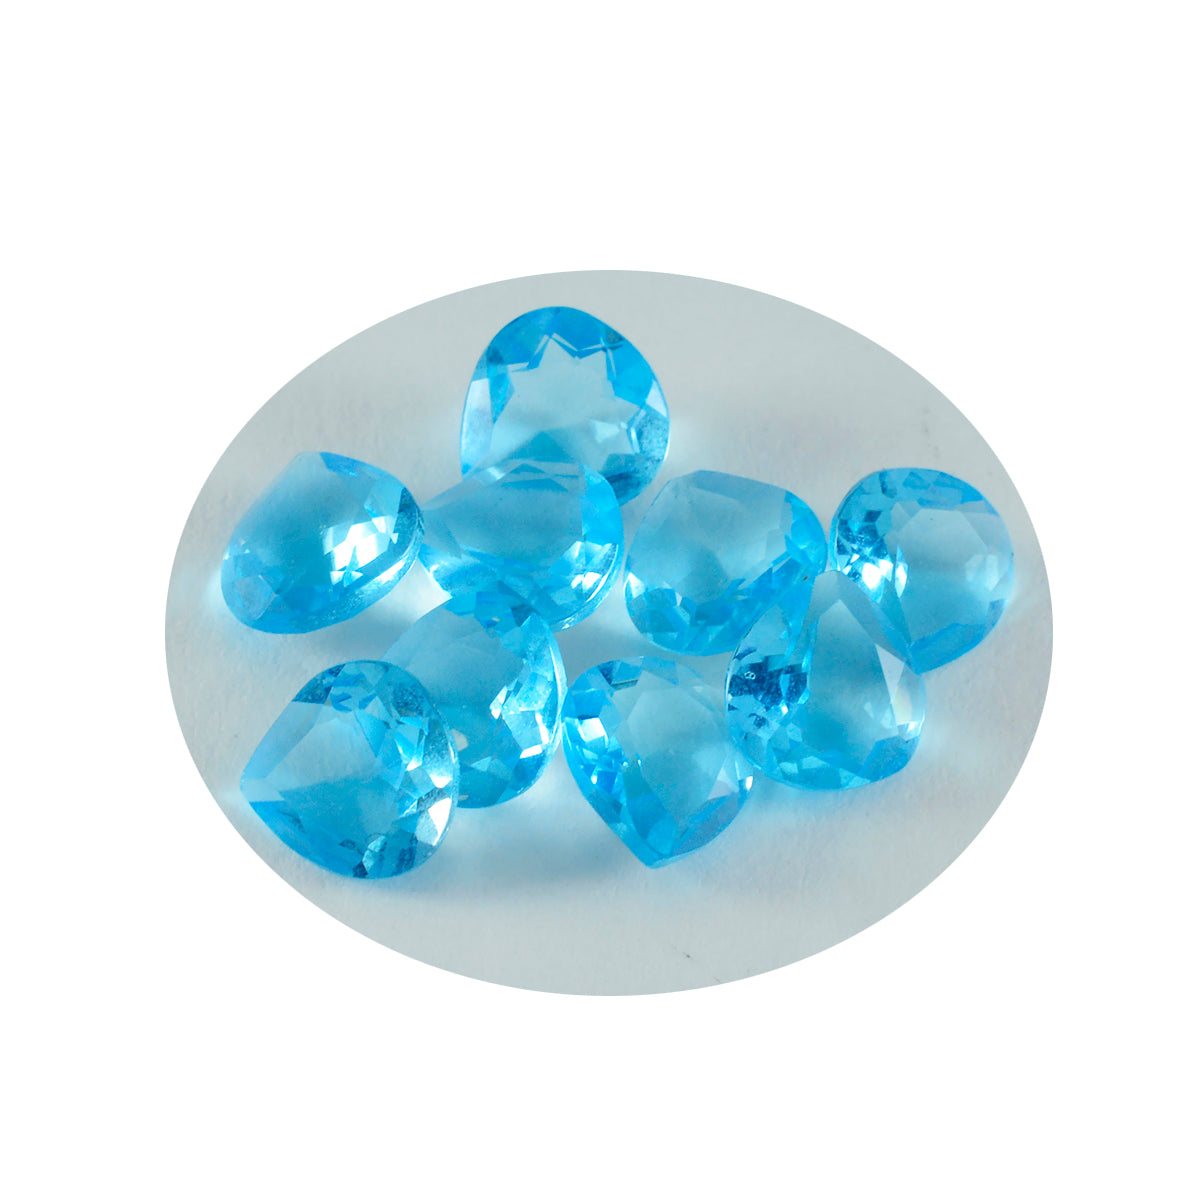 Riyogems 1 pieza de topacio azul CZ facetado 6x6 mm forma de corazón piedra preciosa de calidad bonita